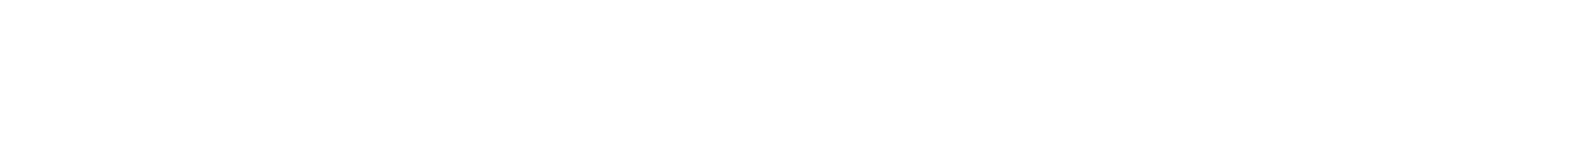 Autodesk Logo groß für dunkle Hintergründe (transparentes PNG)